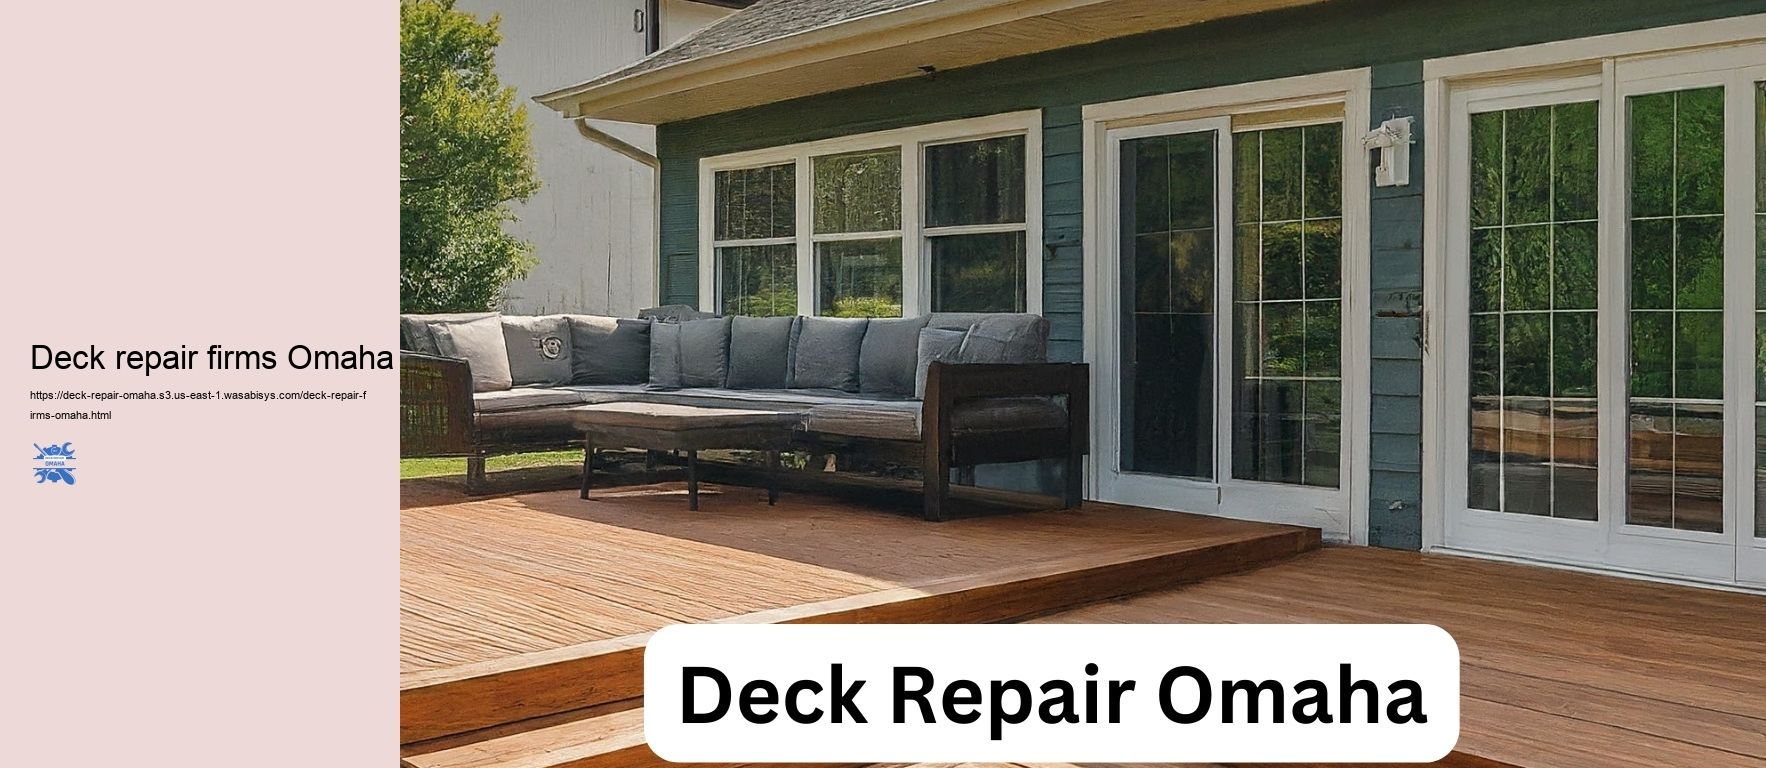 Deck repair firms Omaha